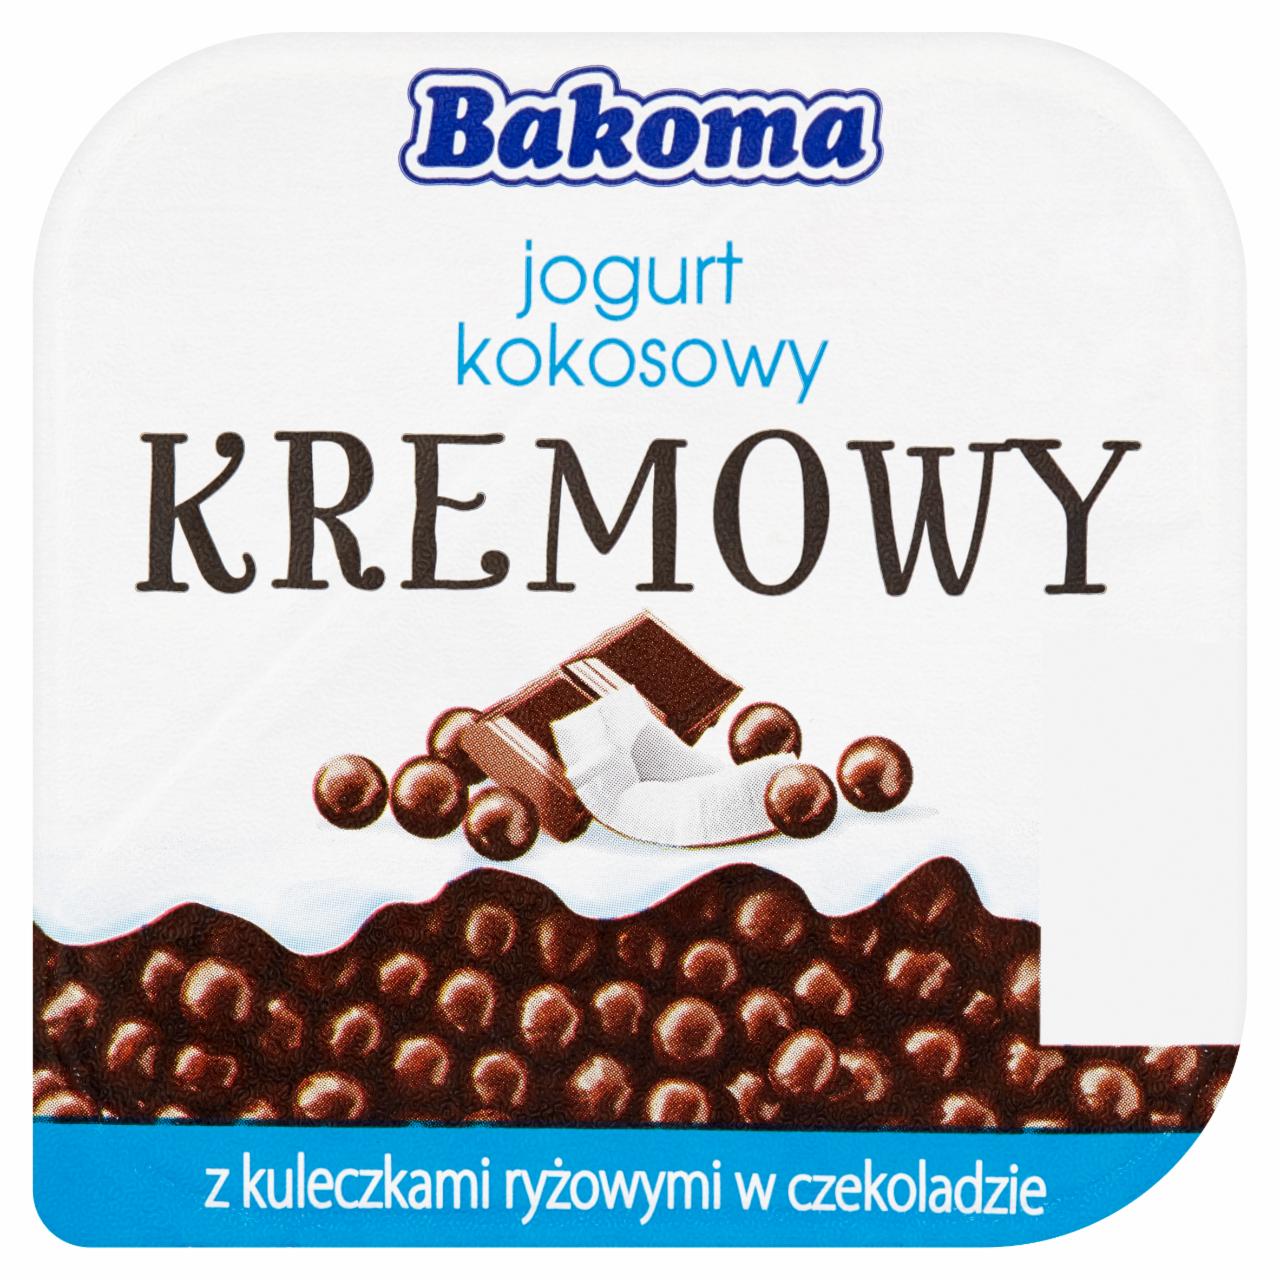 Zdjęcia - Bakoma Kremowy jogurt kokosowy z kuleczkami ryżowymi w czekoladzie 150 g